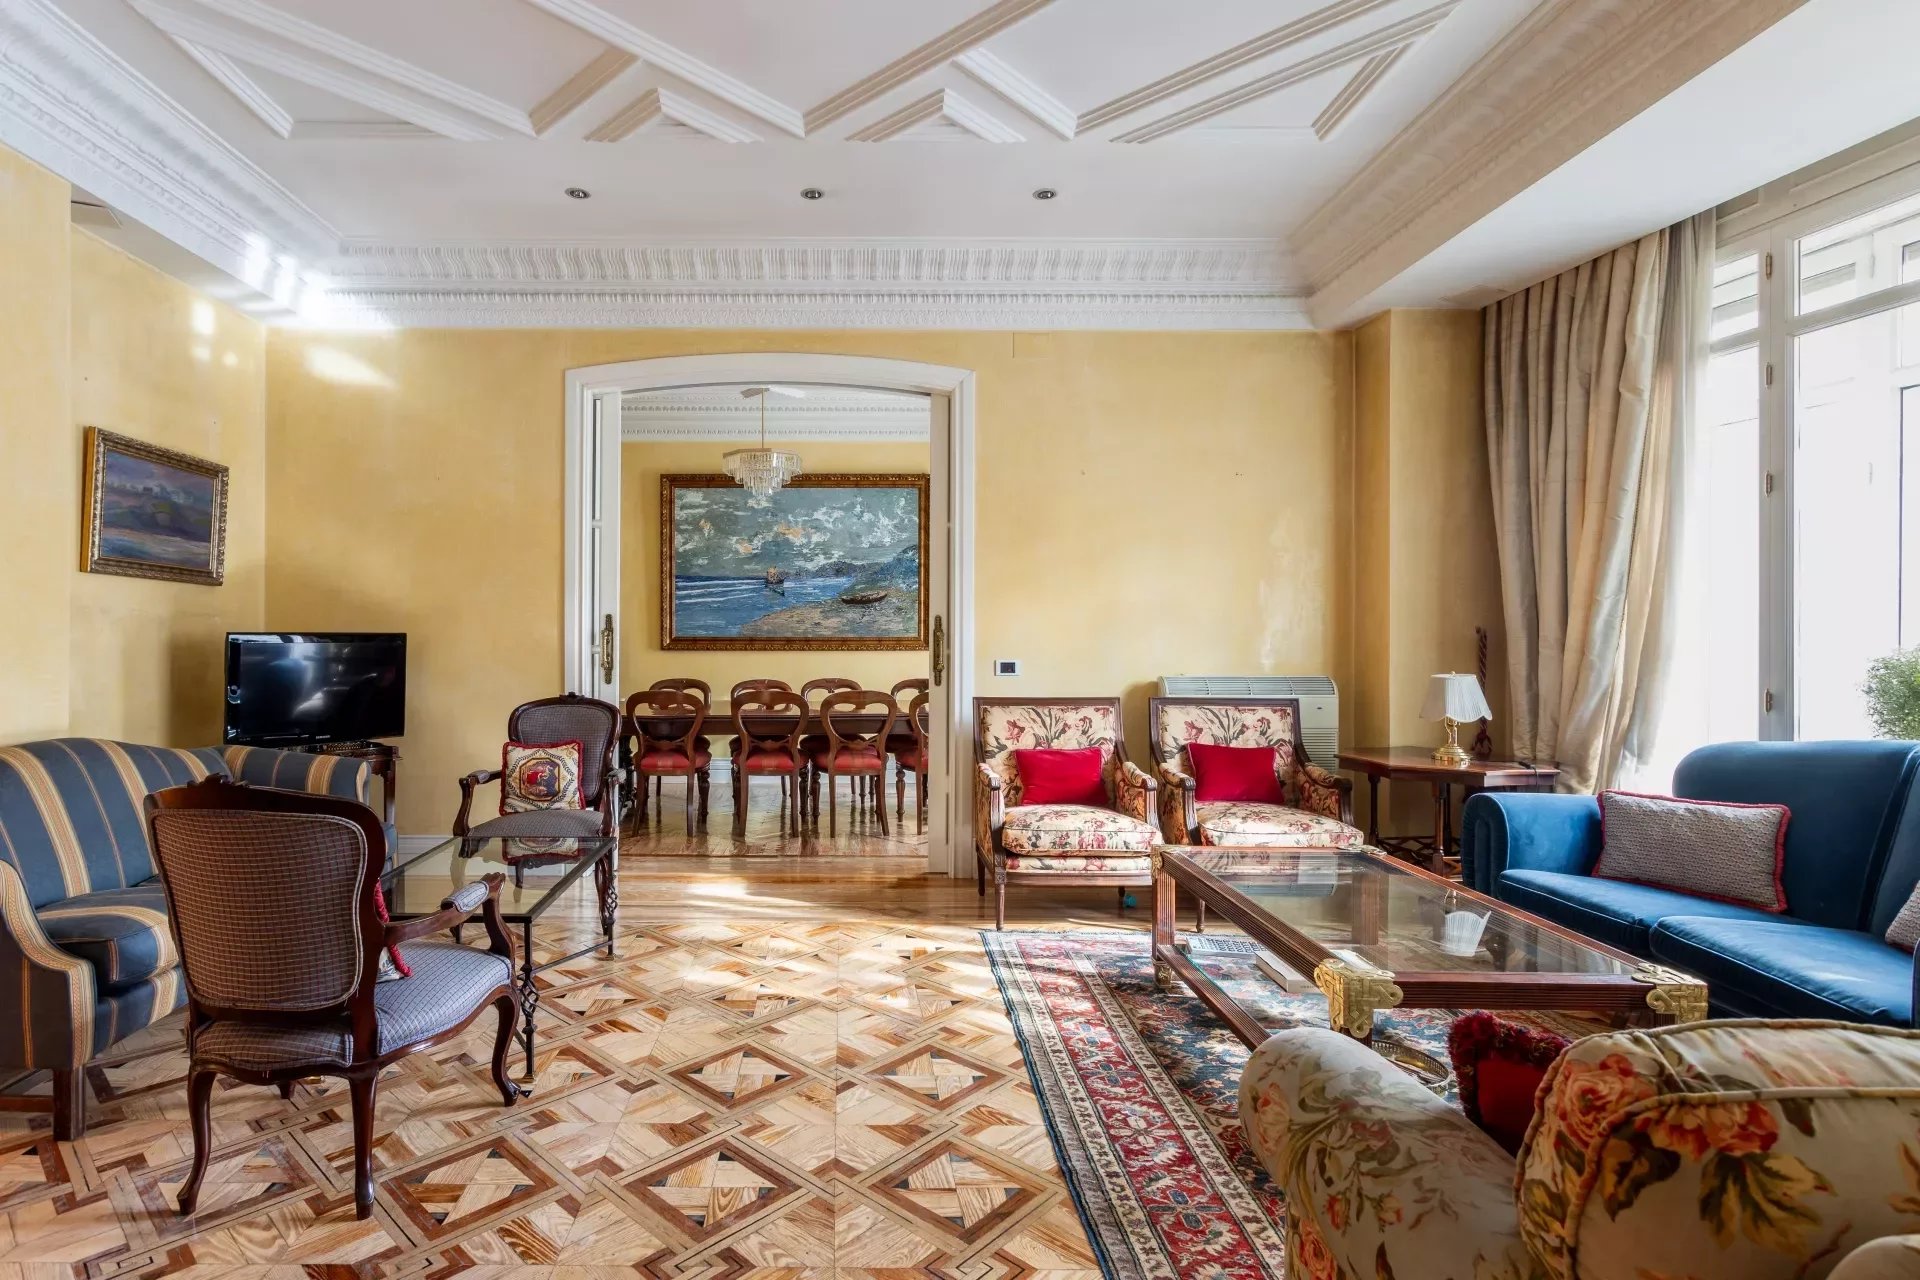 Appartement exclusif dans le quartier prestigieux d'Almagro, à Madrid